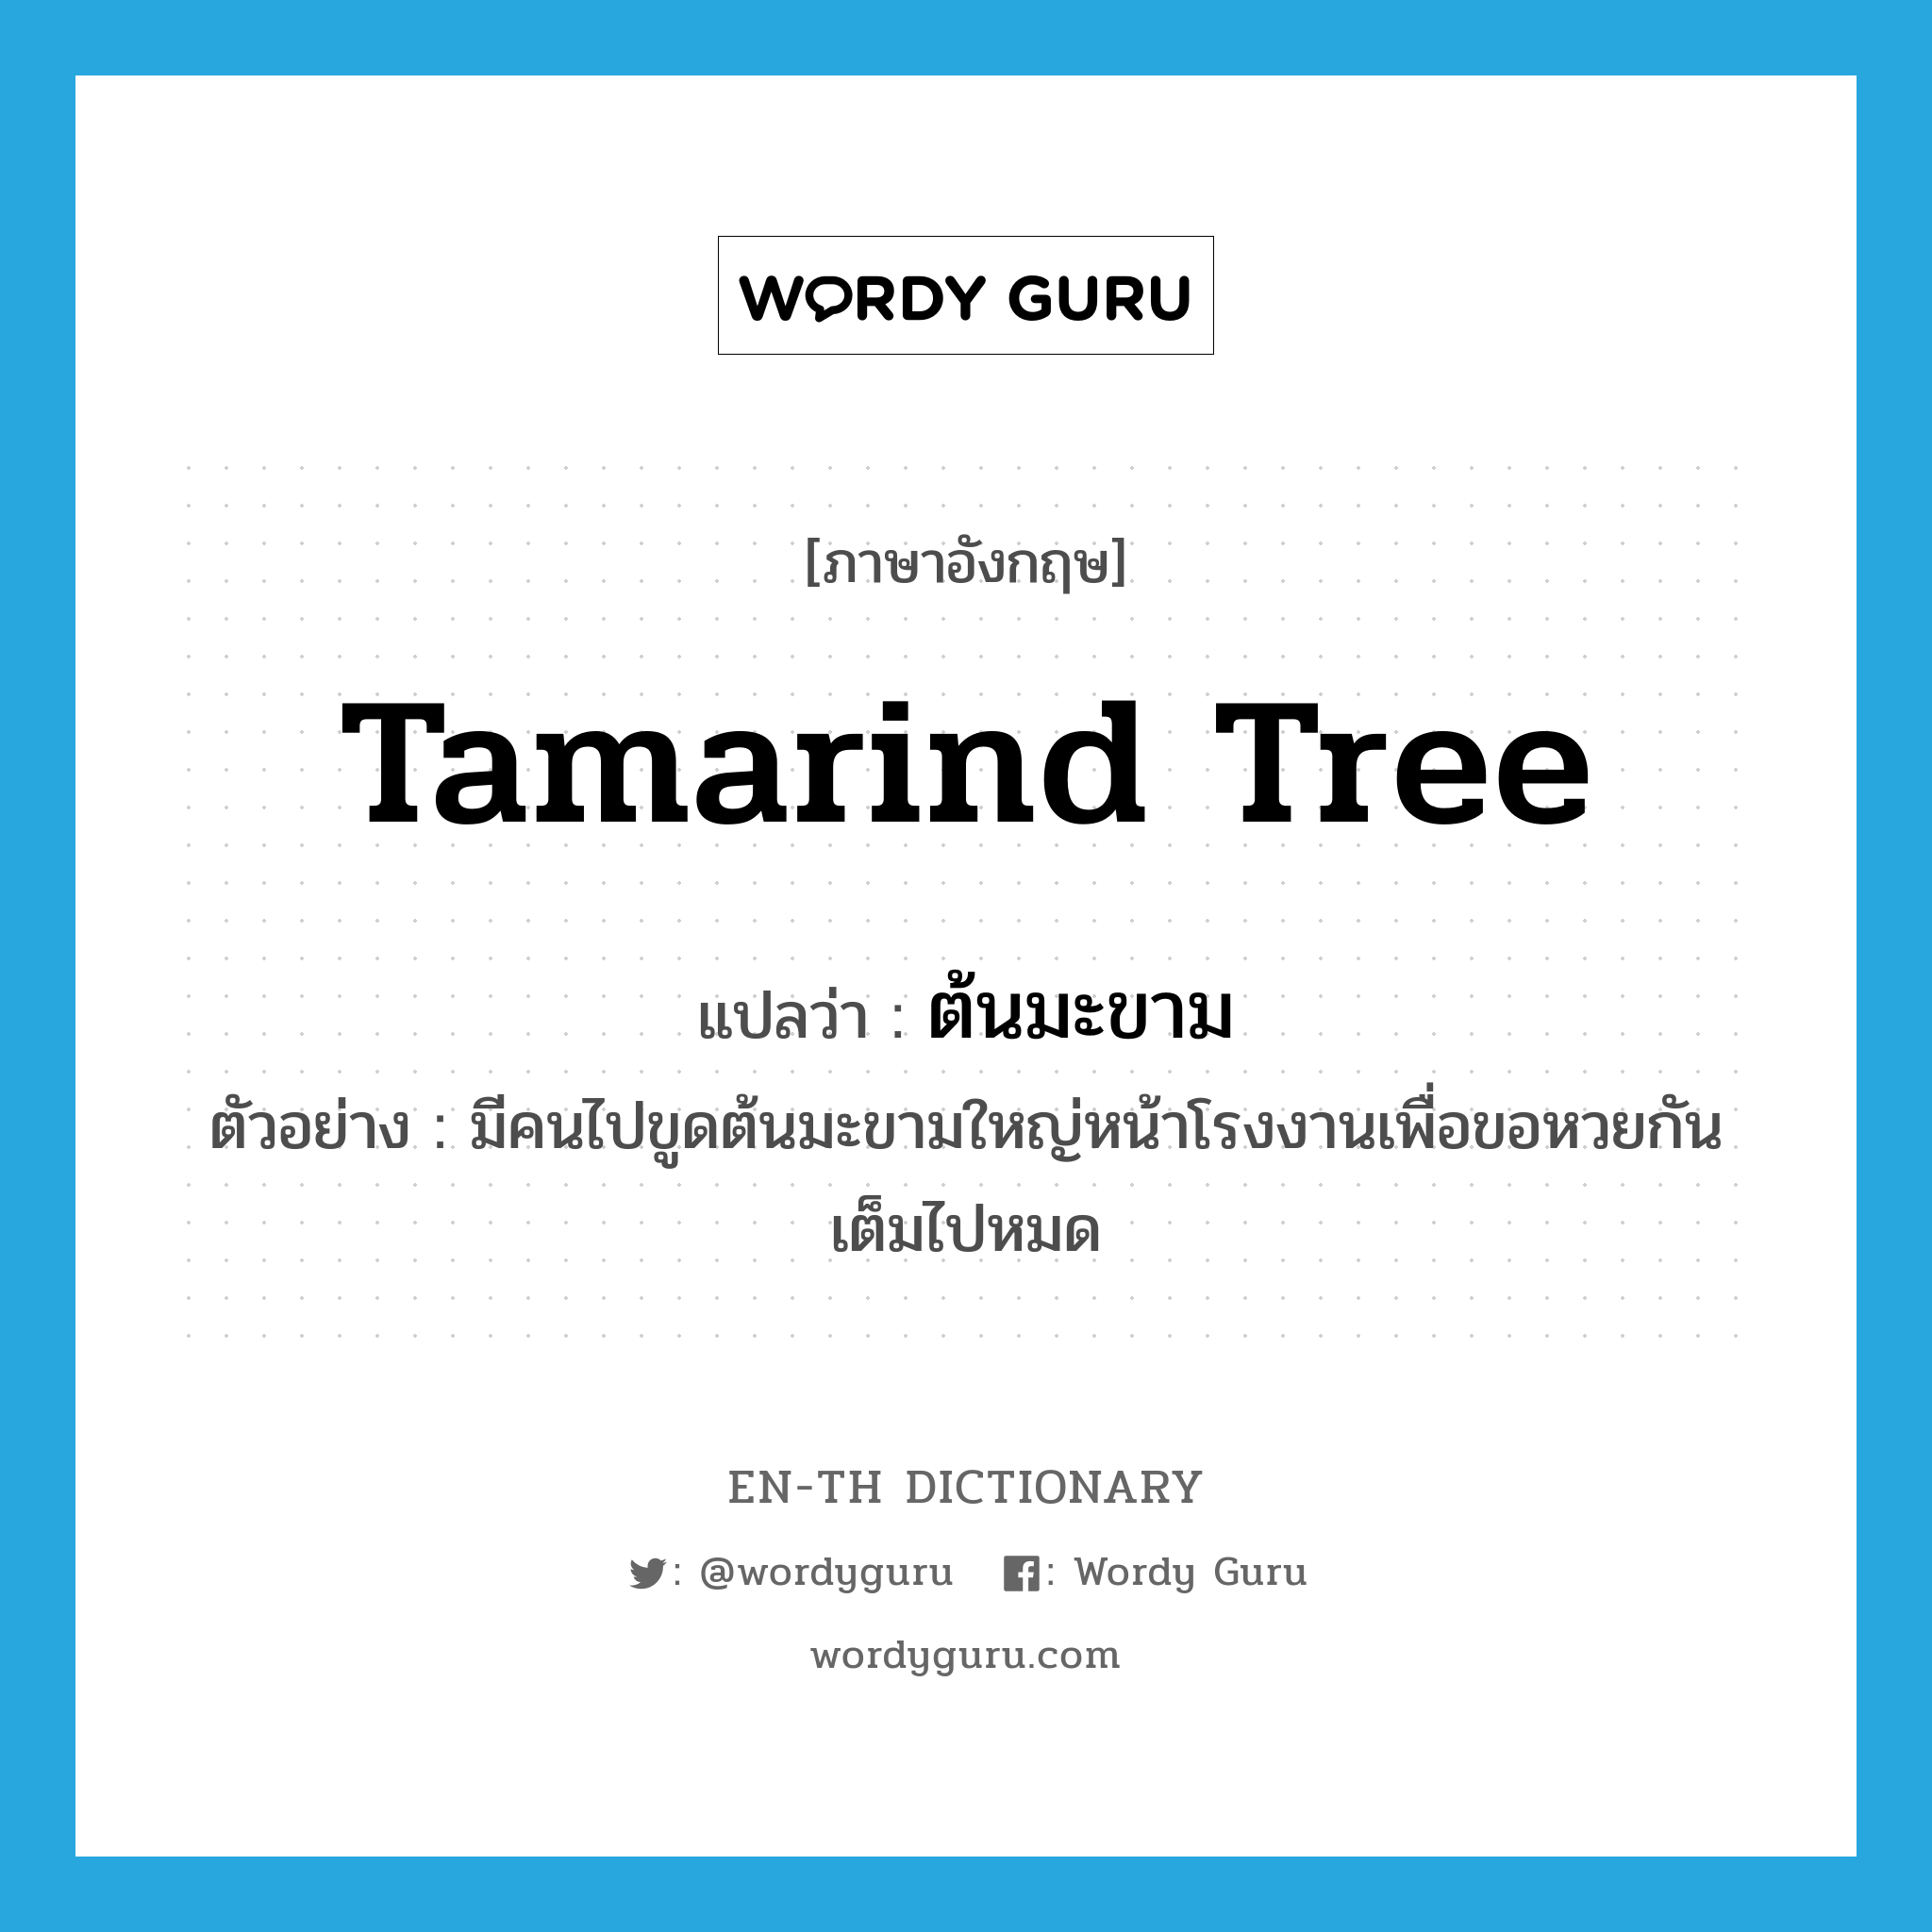 tamarind tree แปลว่า?, คำศัพท์ภาษาอังกฤษ tamarind tree แปลว่า ต้นมะขาม ประเภท N ตัวอย่าง มีคนไปขูดต้นมะขามใหญ่หน้าโรงงานเพื่อขอหวยกันเต็มไปหมด หมวด N